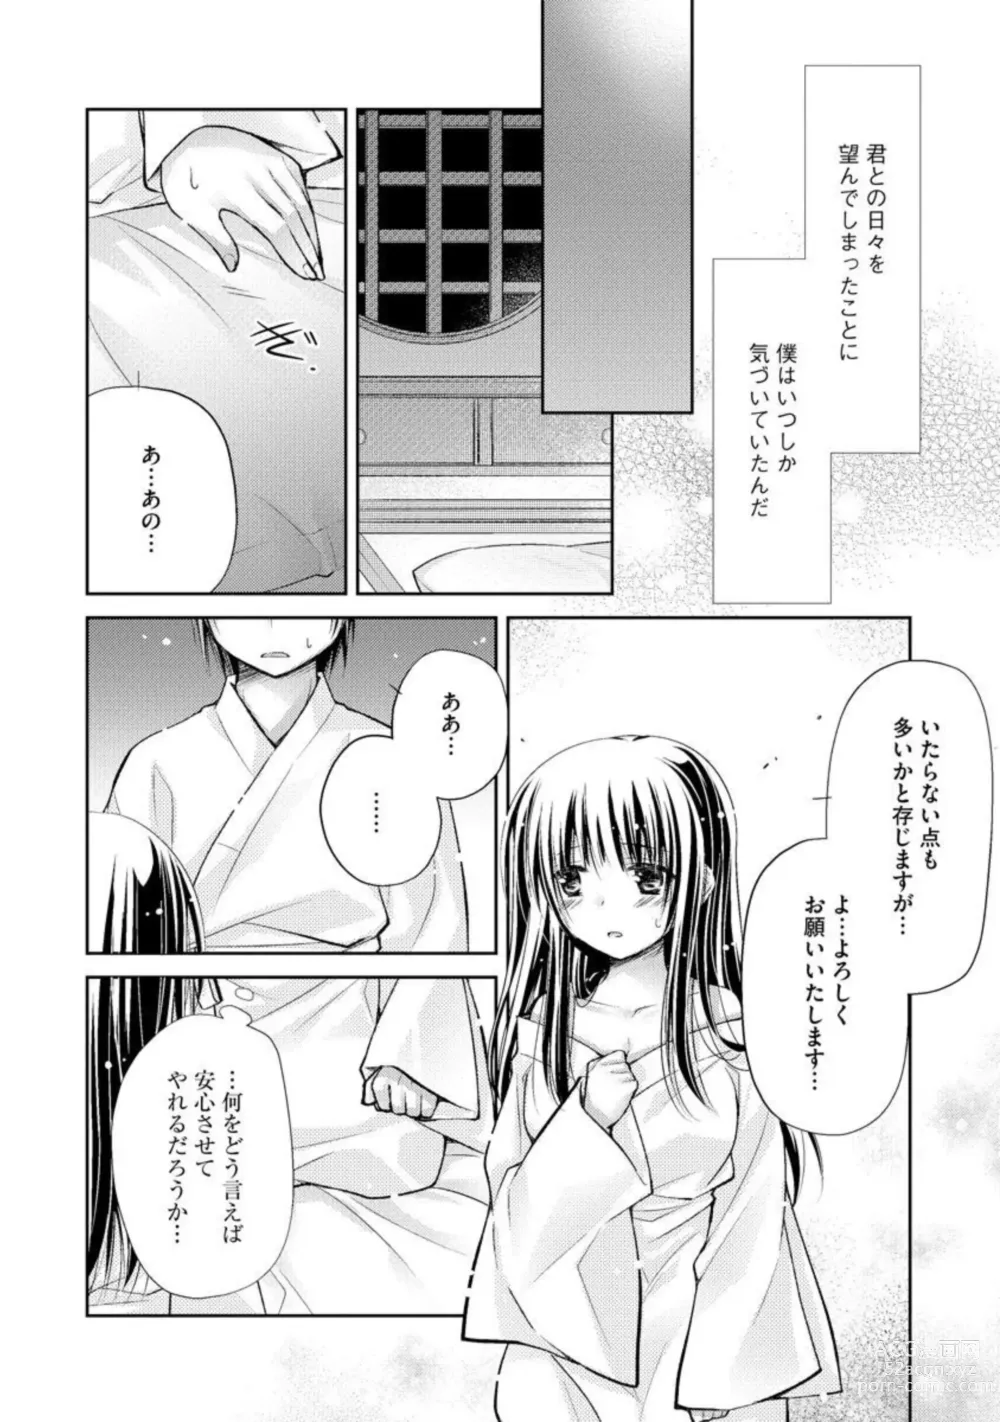 Page 12 of manga Aishin Retoroshizumu 1